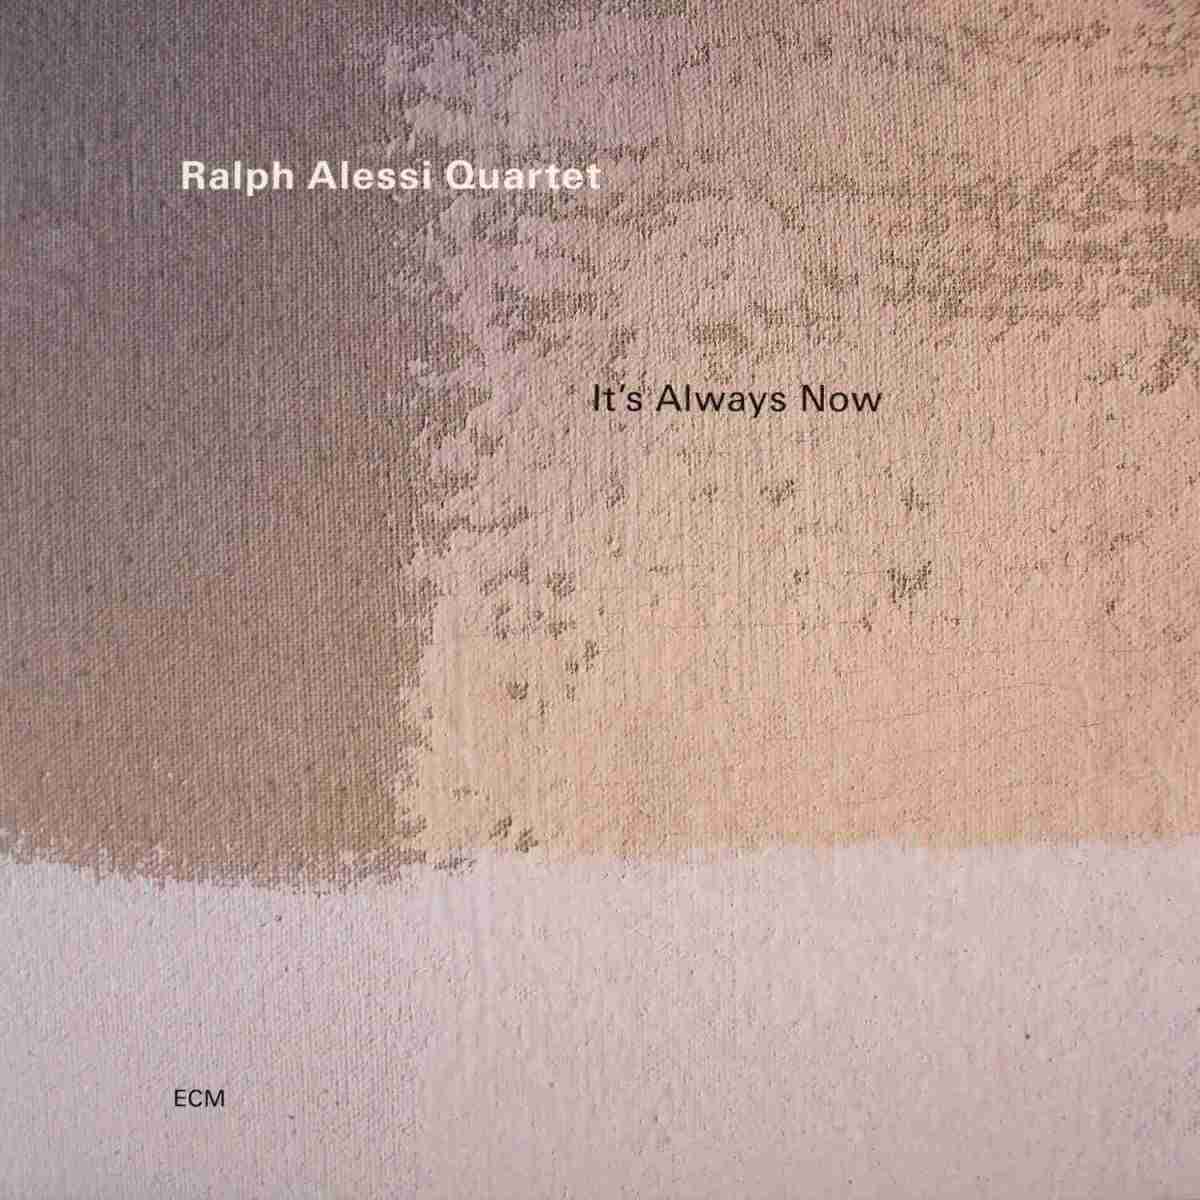 Schallplatte Ralph Alessi Quartet – It’s Always Now (ECM) im Test, Bild 1